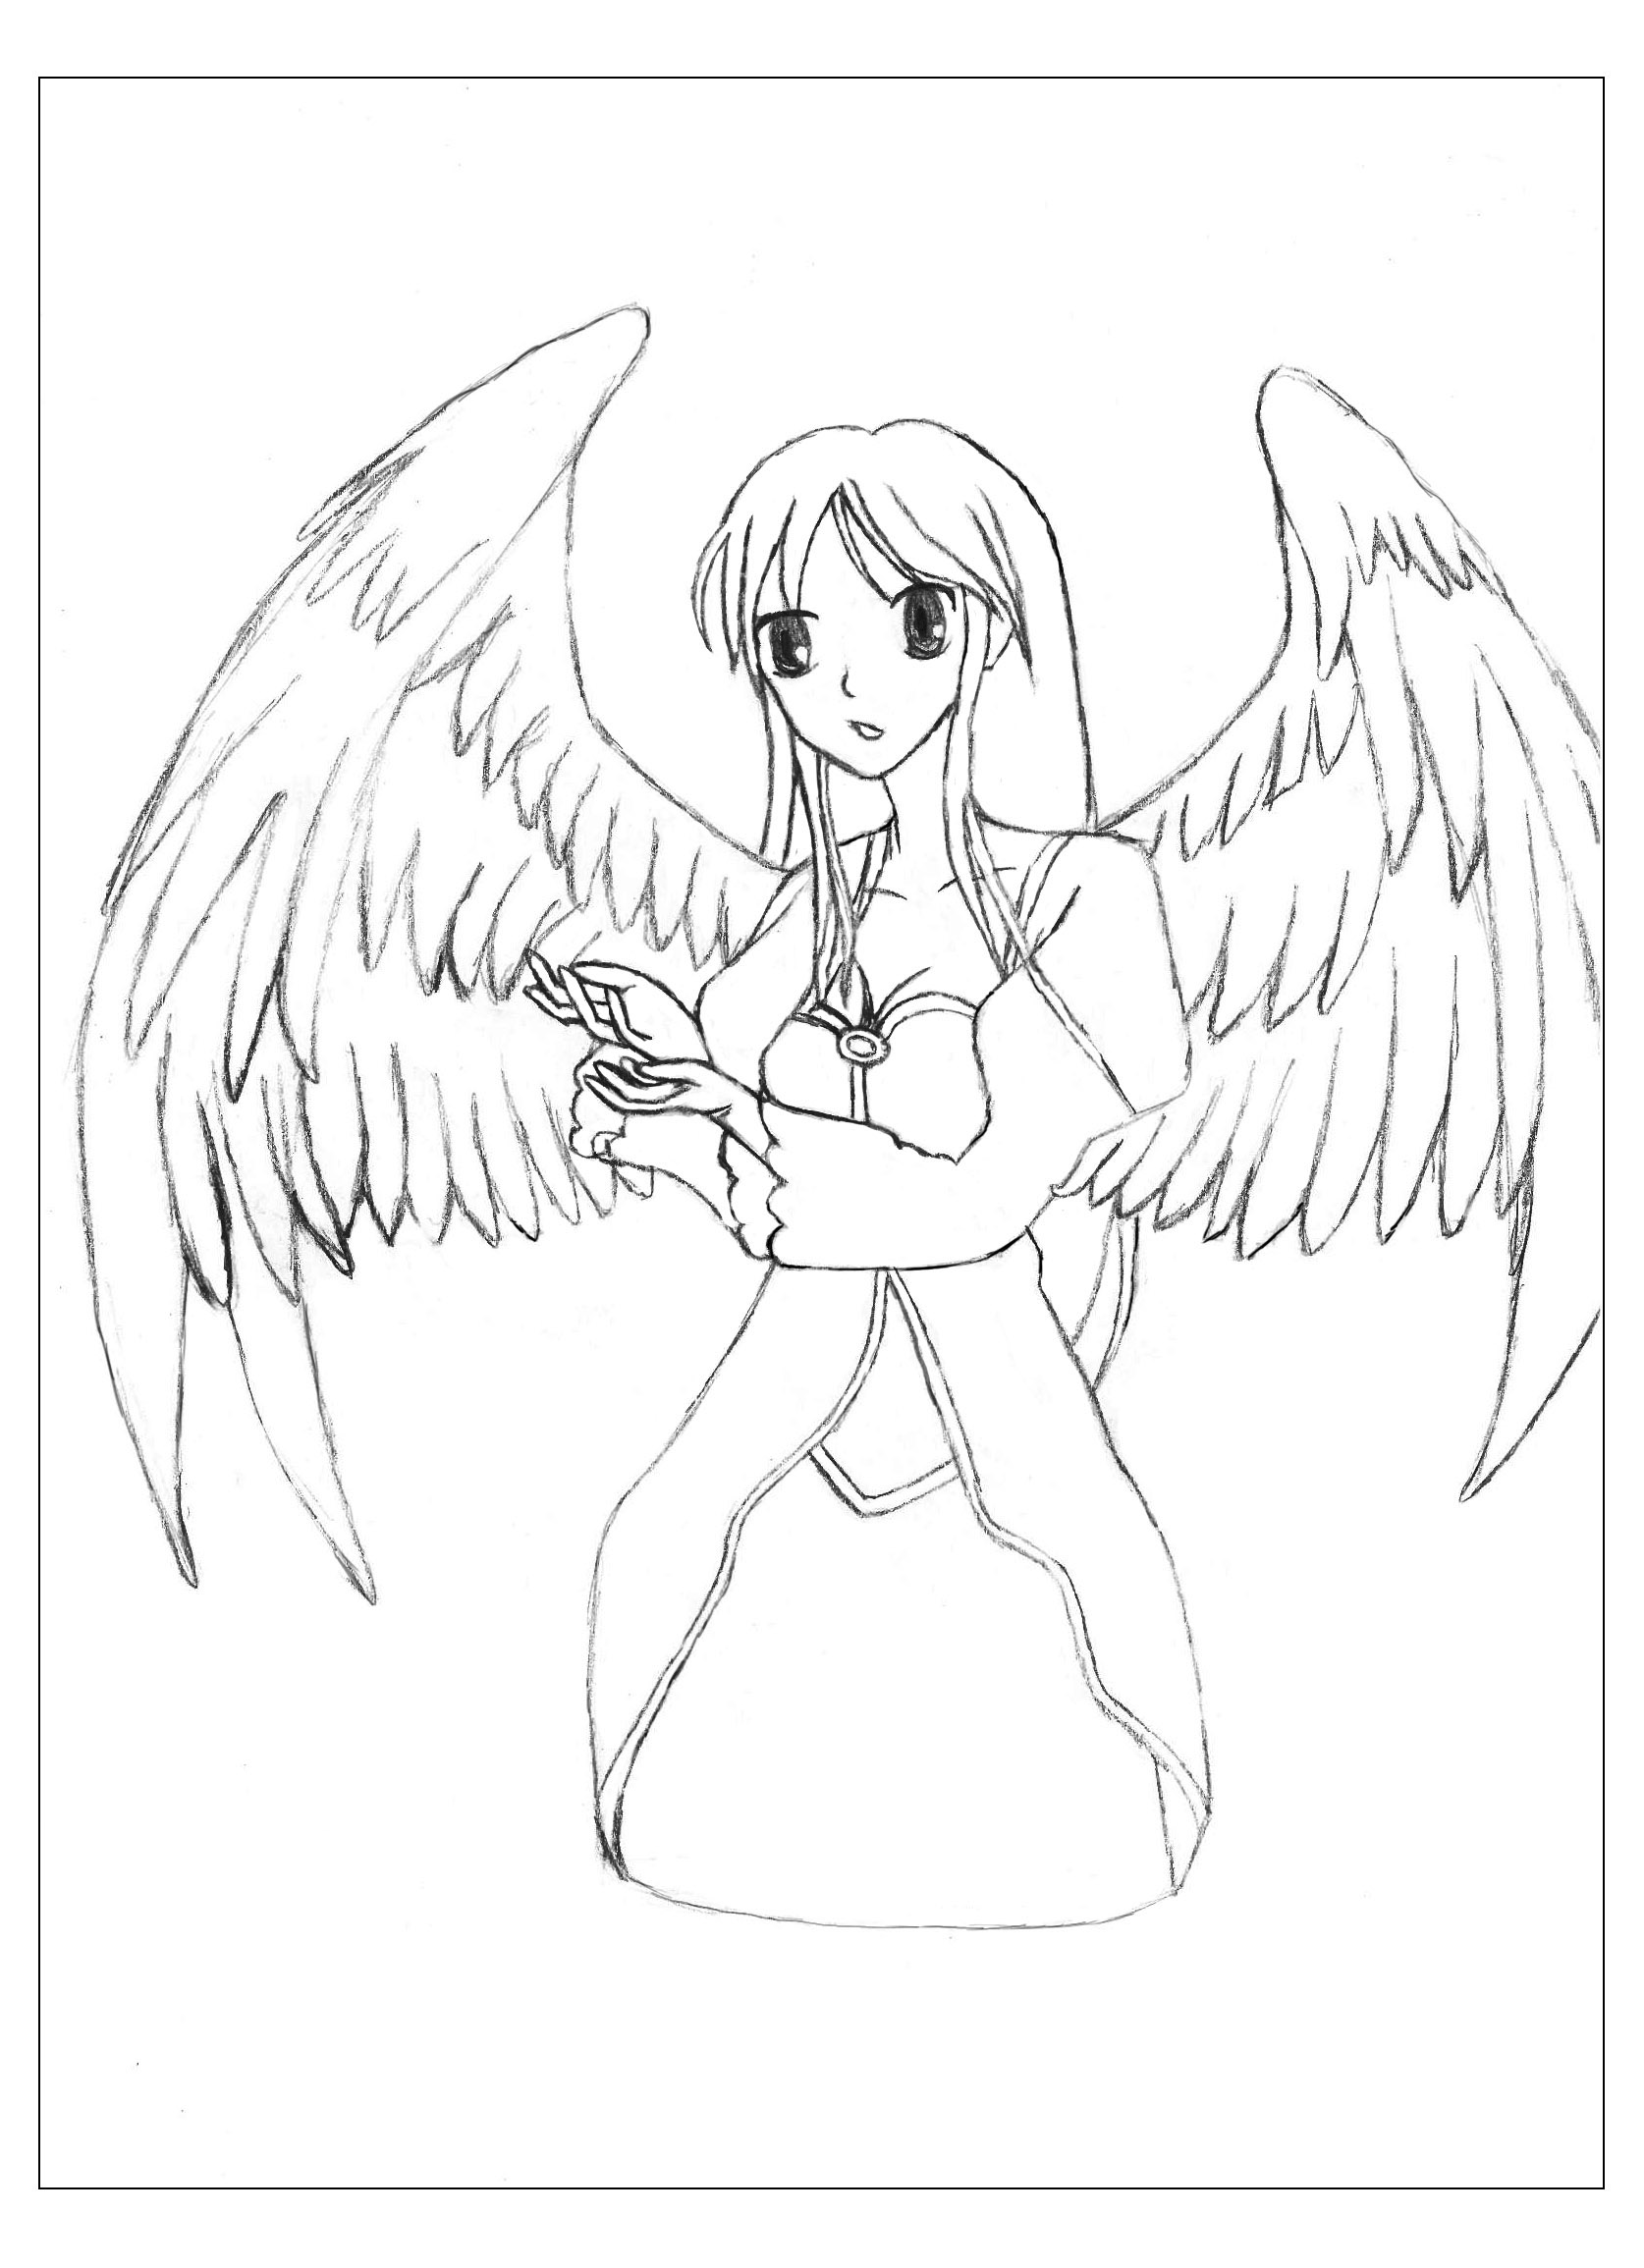 Um desenho original ao estilo manga de um anjo com asas magníficas, Artista : Krissy